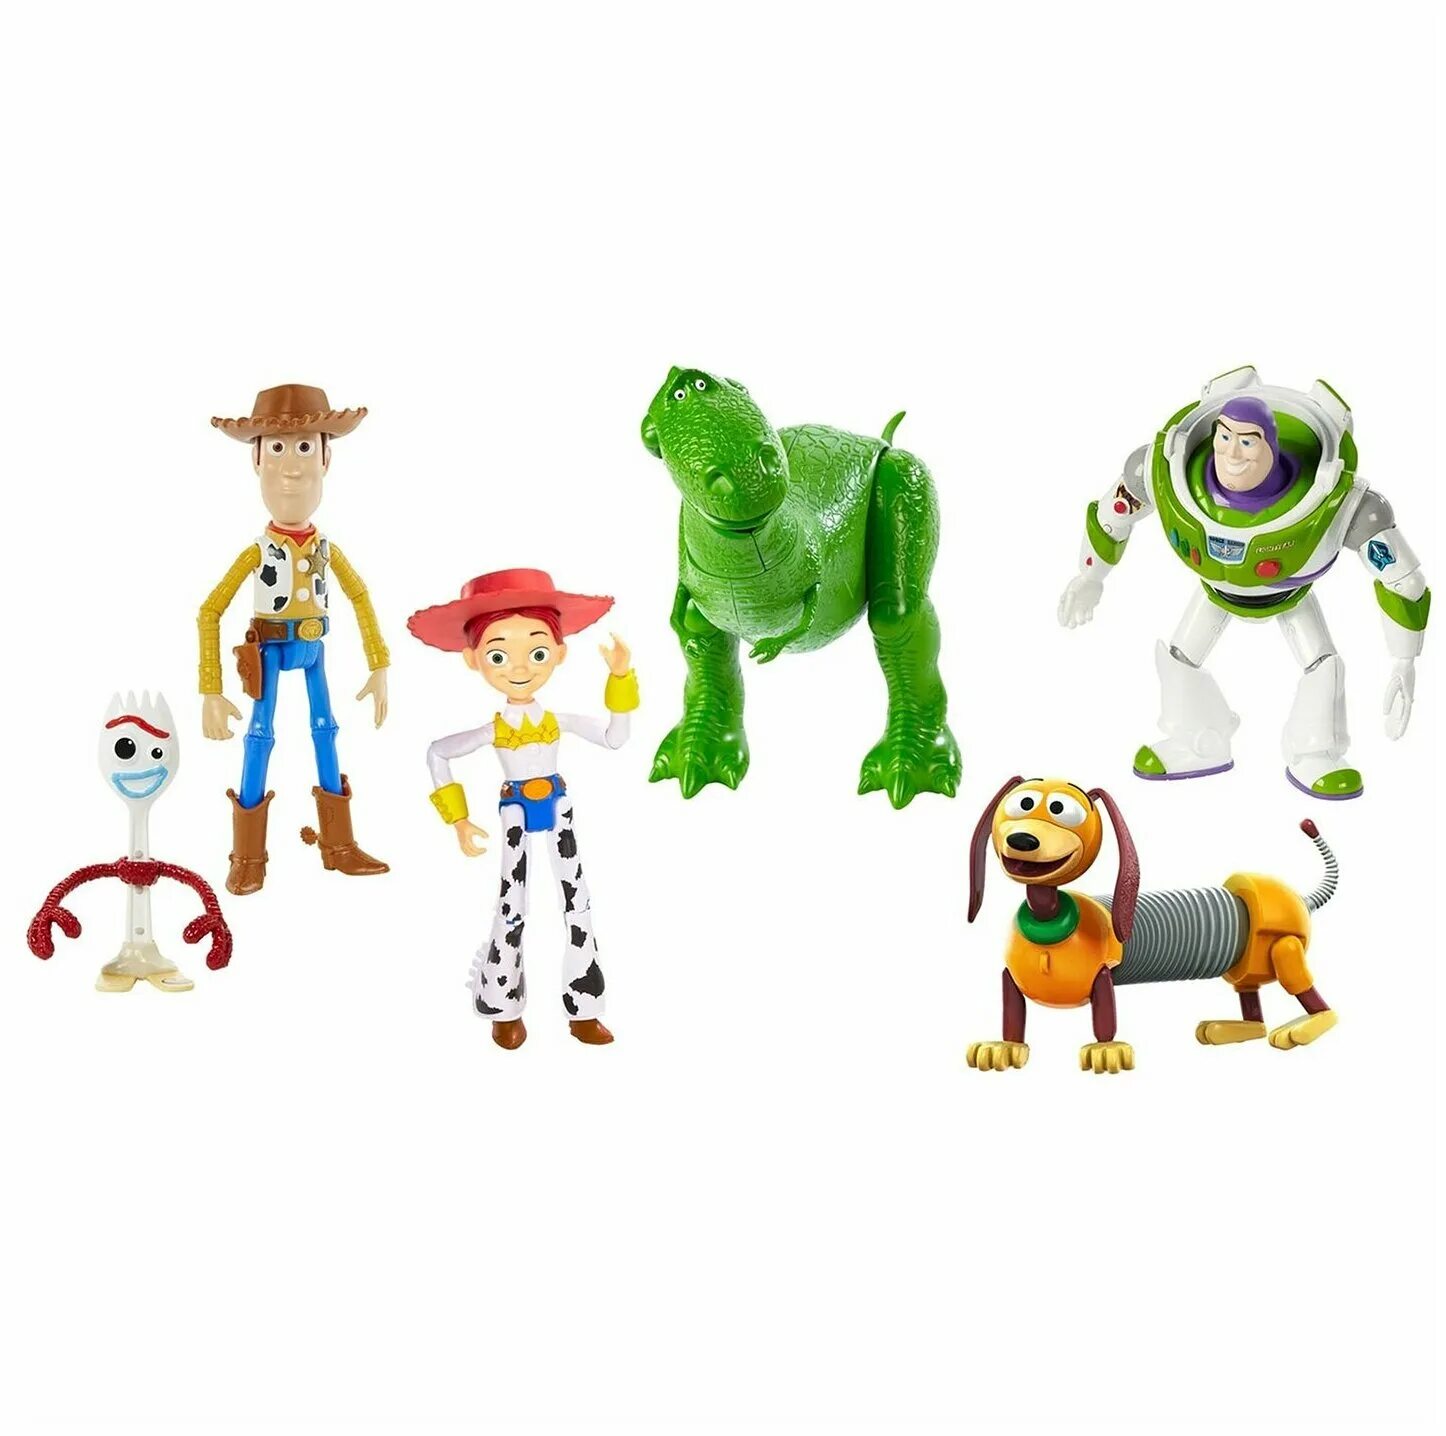 Купить игрушки toys. Фигурки Disney Pixar Toy story. Toy story 4 дорожное приключение 6шт gdl54. Набор фигурок Toy story 4. Набор Disney Pixar Toy story 4 RV friends 6 Pack Figures.